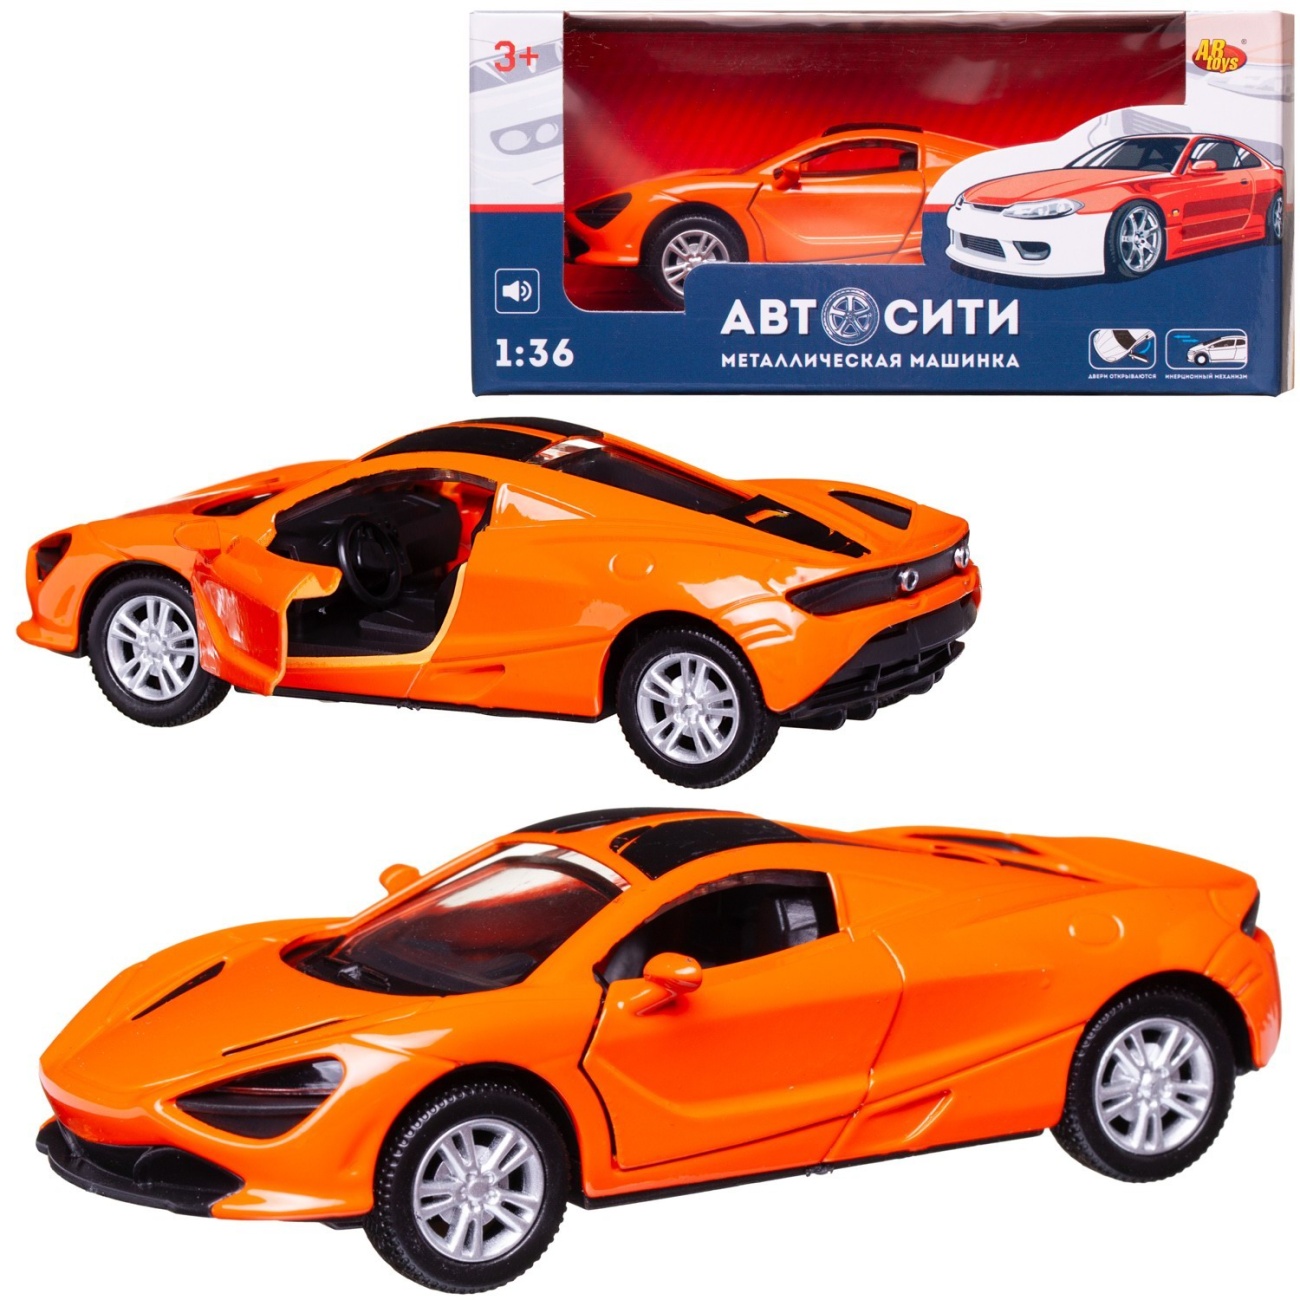 Машинка металл Abtoys АвтоСити 1:36 Спортивная инерция, двери откр.,оранжевая свет/звук C-00522/оранжевая